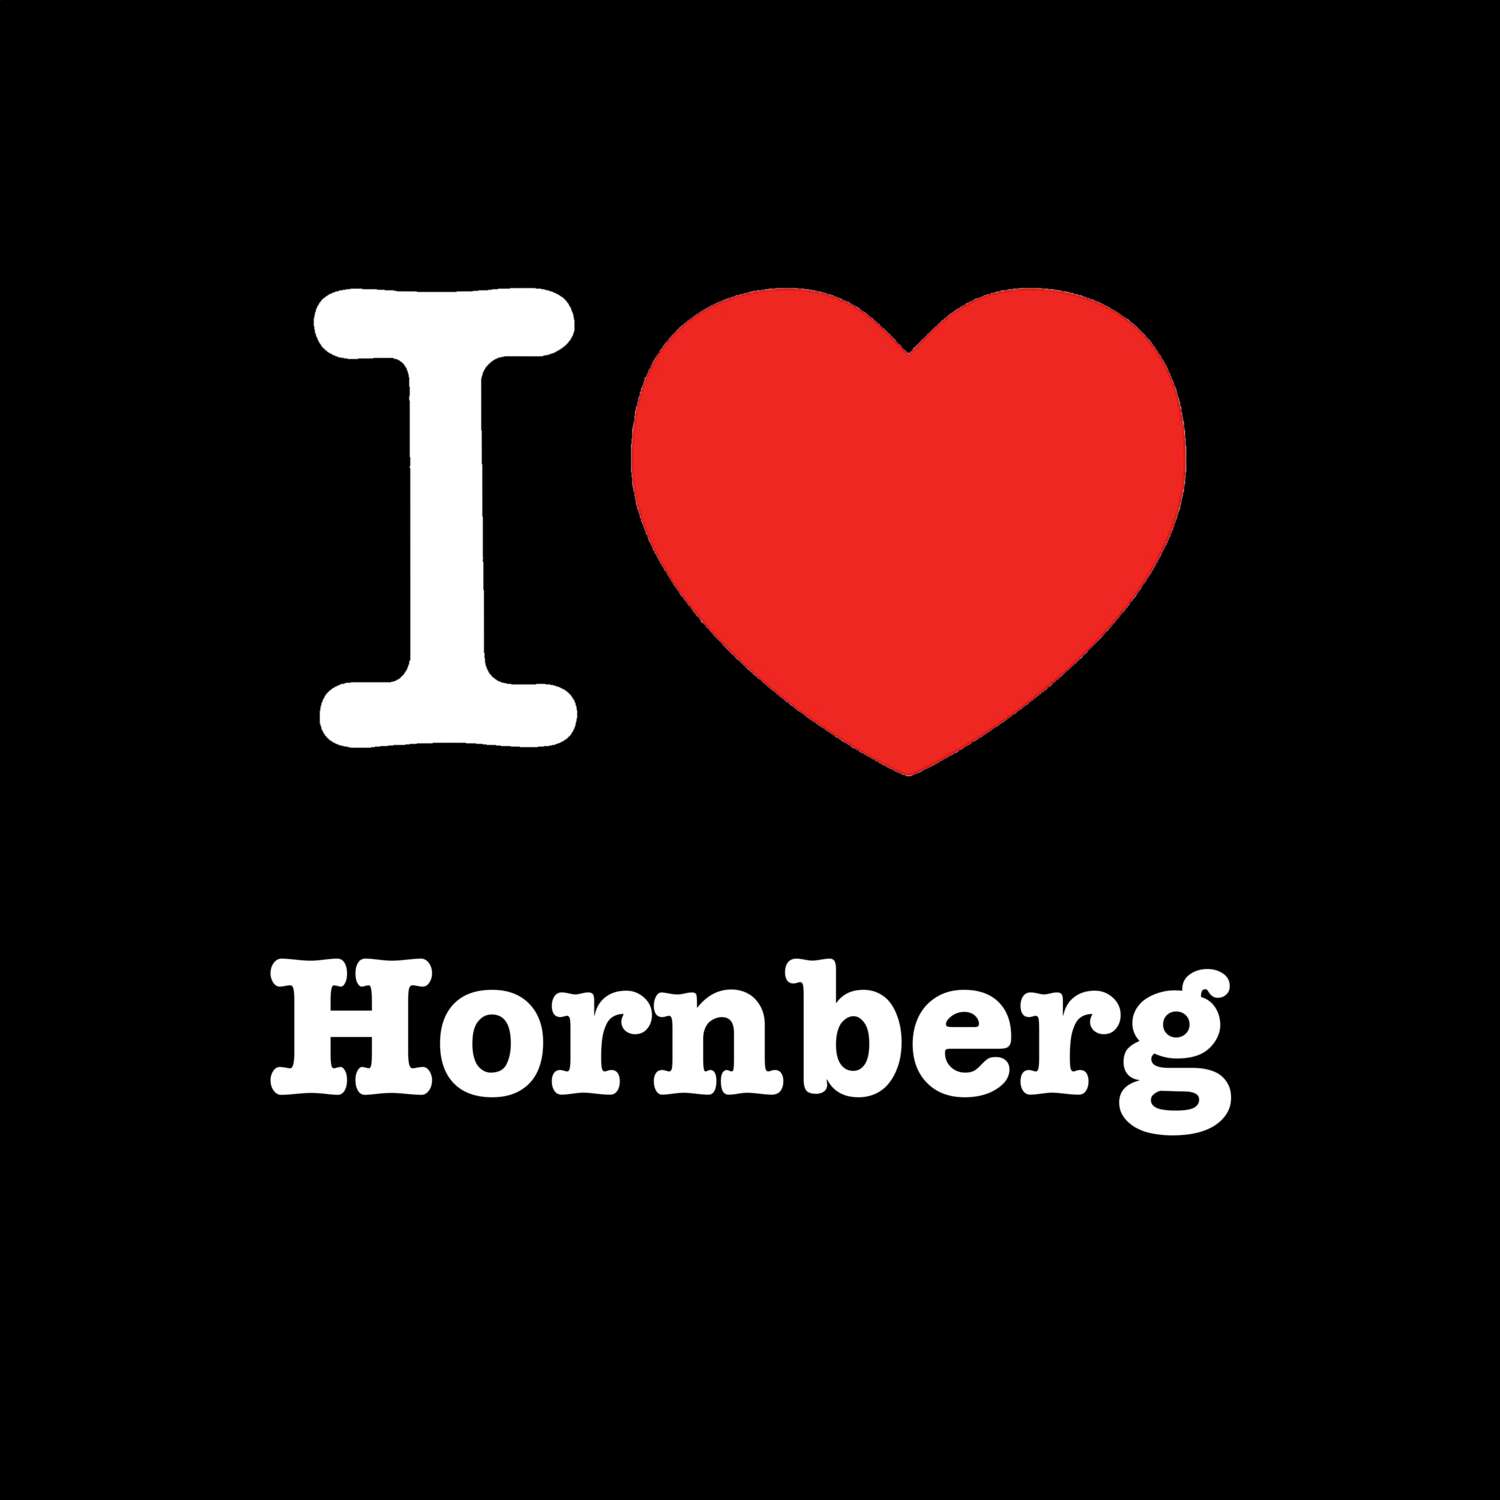 Hornberg T-Shirt »I love«